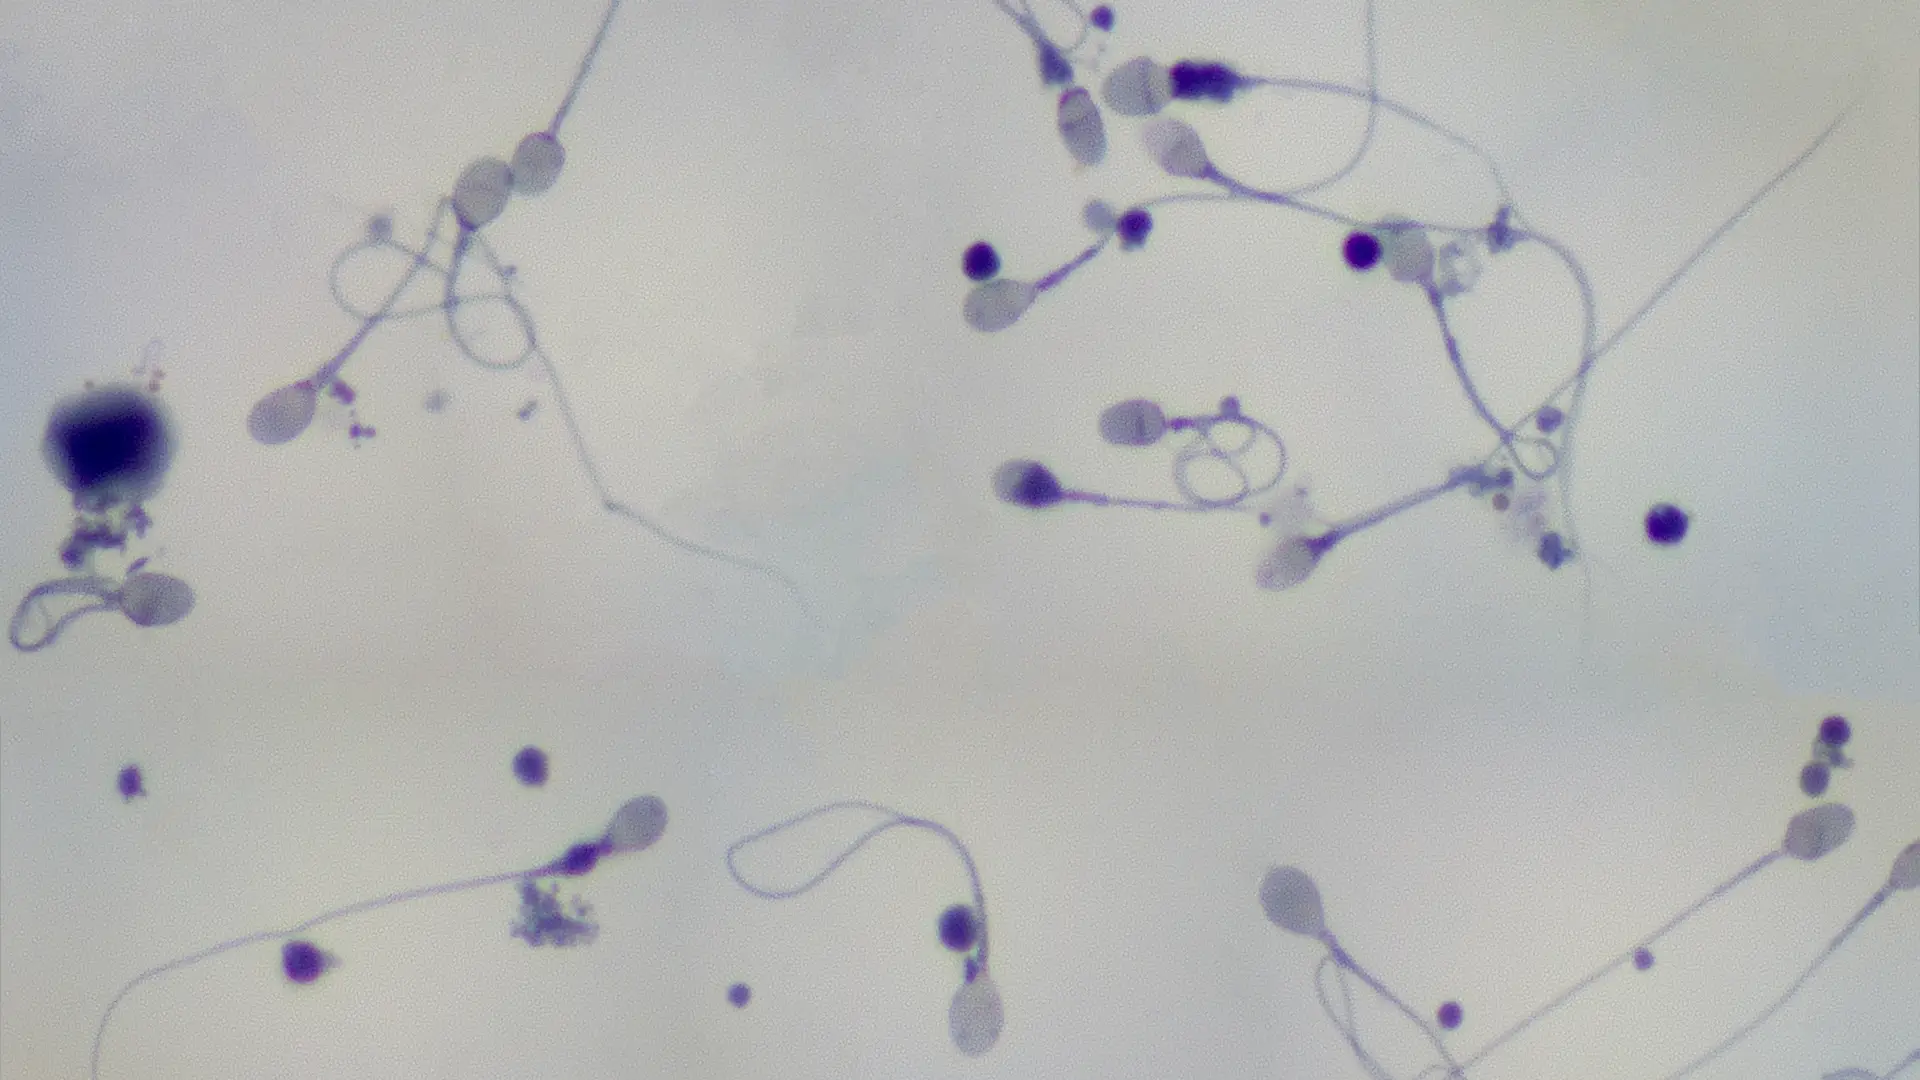 Un medico sujetando un espermatozoide para representar la calidad del semen en relacion a la fertilidad